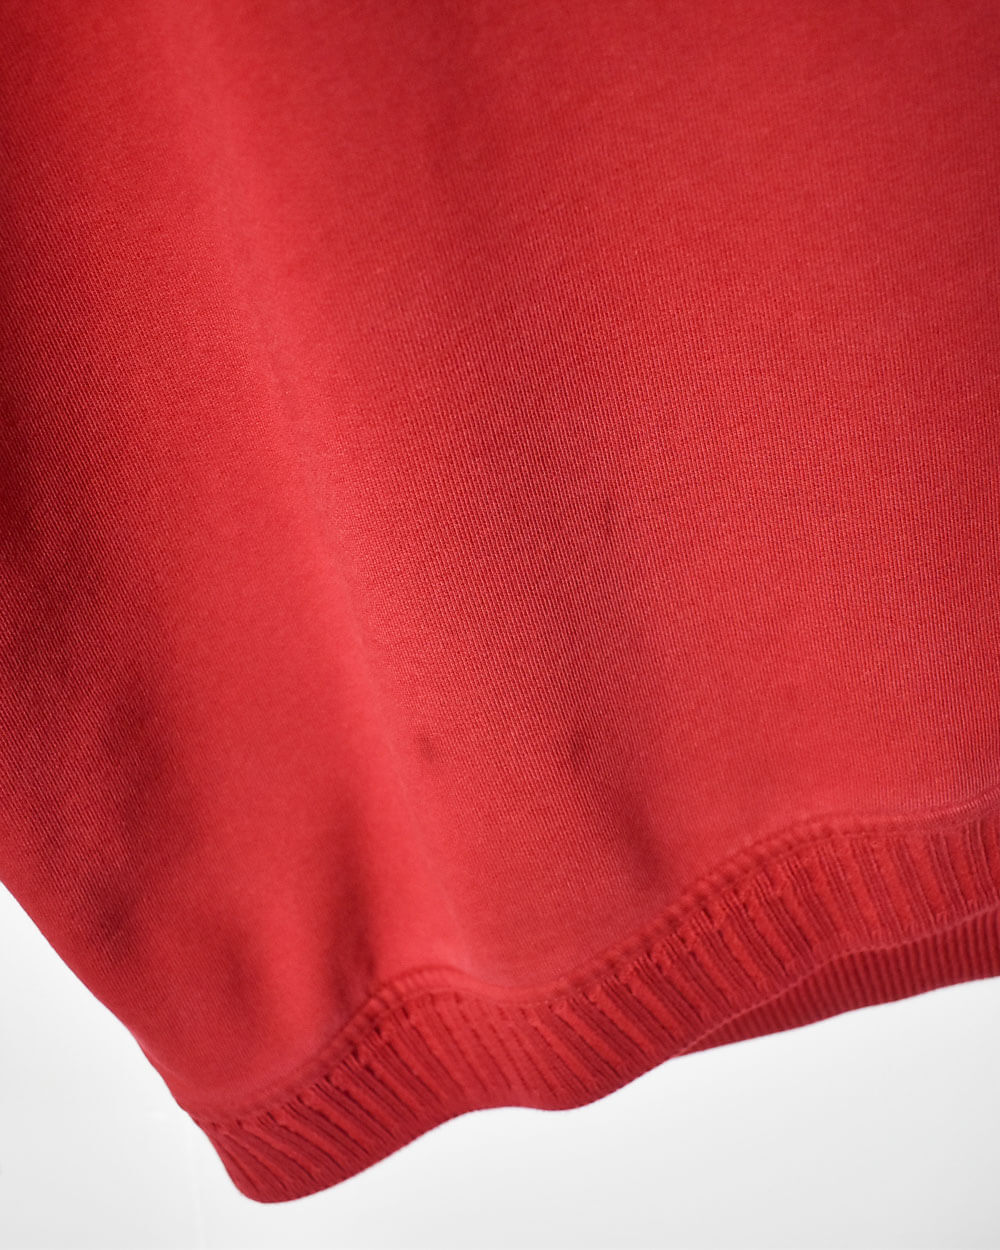 Red Carlo Colucci Sweatshirt - X-Large